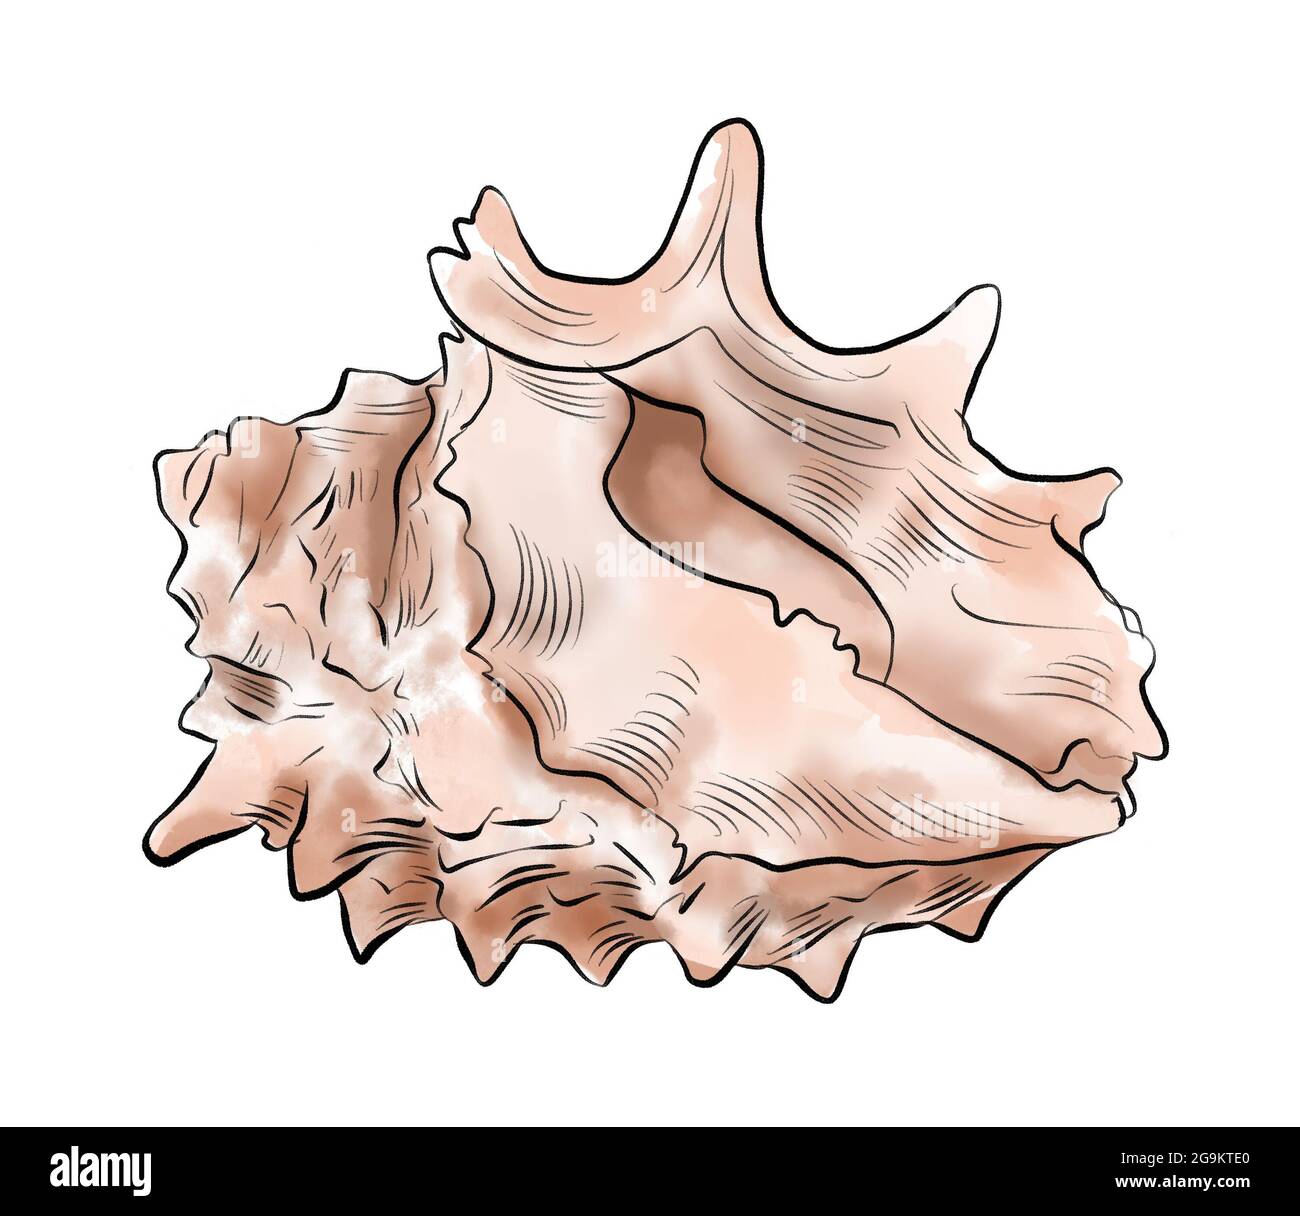 Aquarelle illustration numérique des coquillages de la vie marine brune sur fond blanc isolé. Illustration de haute qualité Banque D'Images